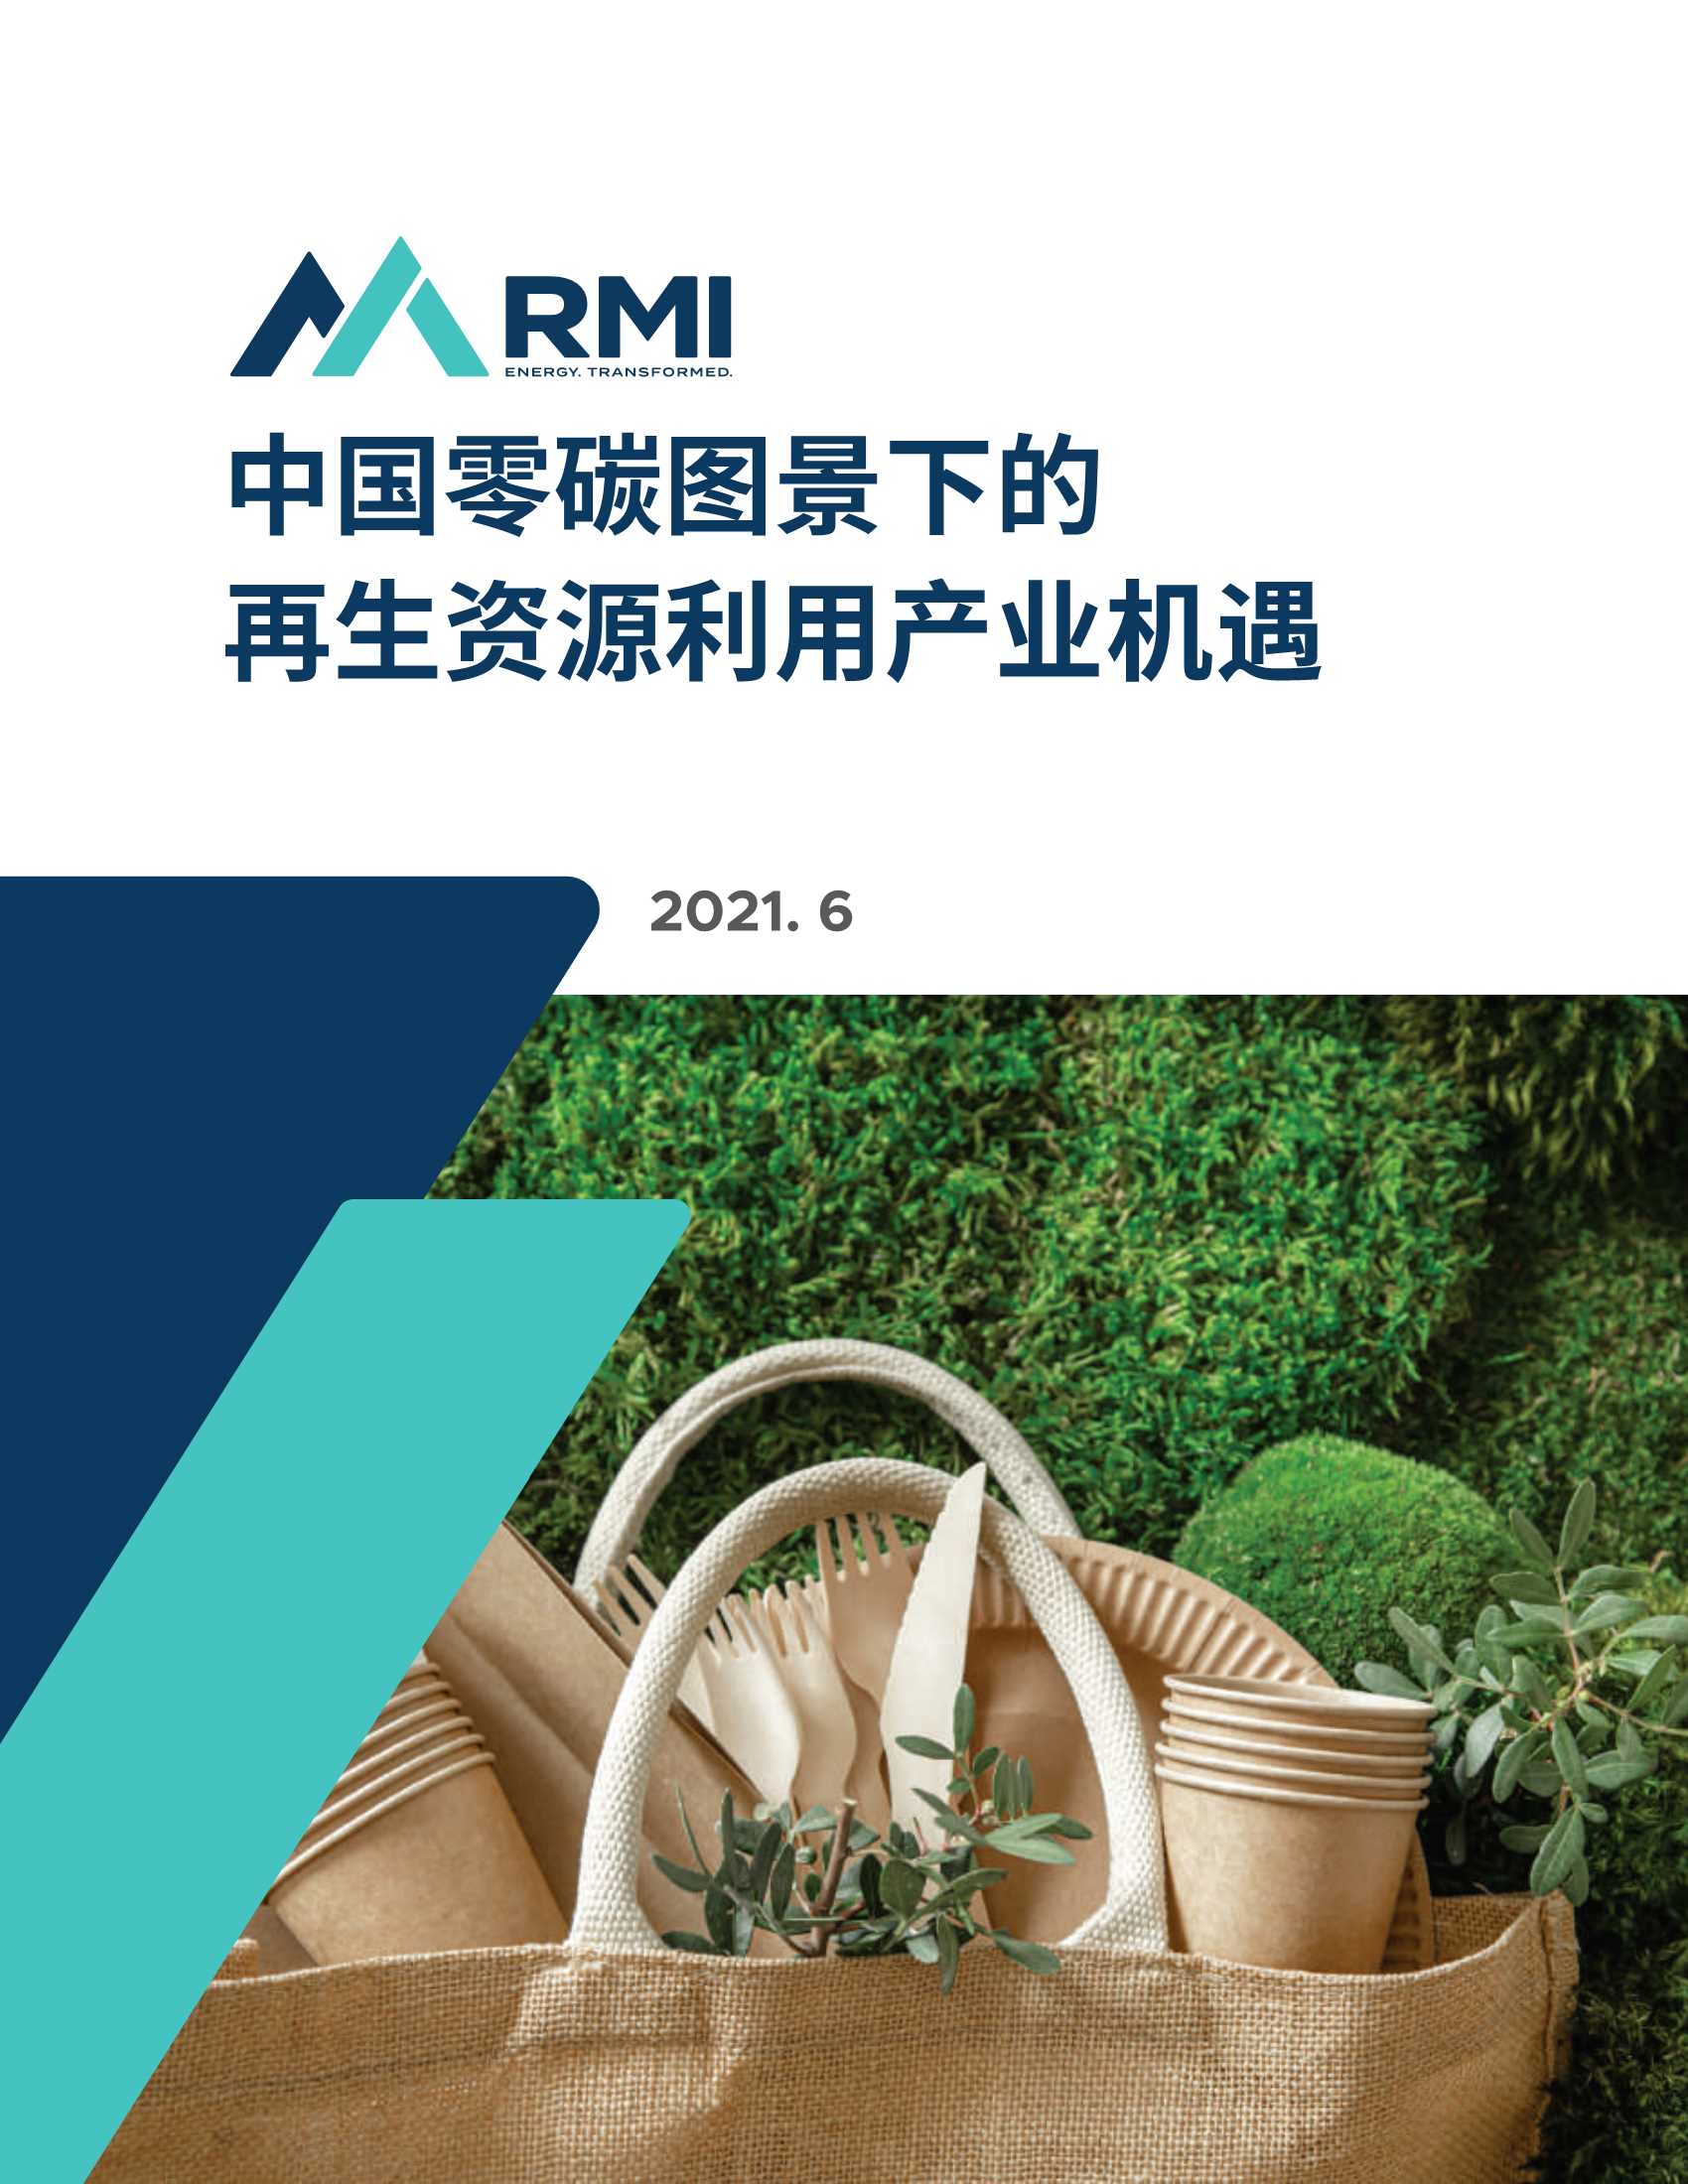 RMI-中国零碳图景下的再生资源利用产业机遇-2021.06-23页